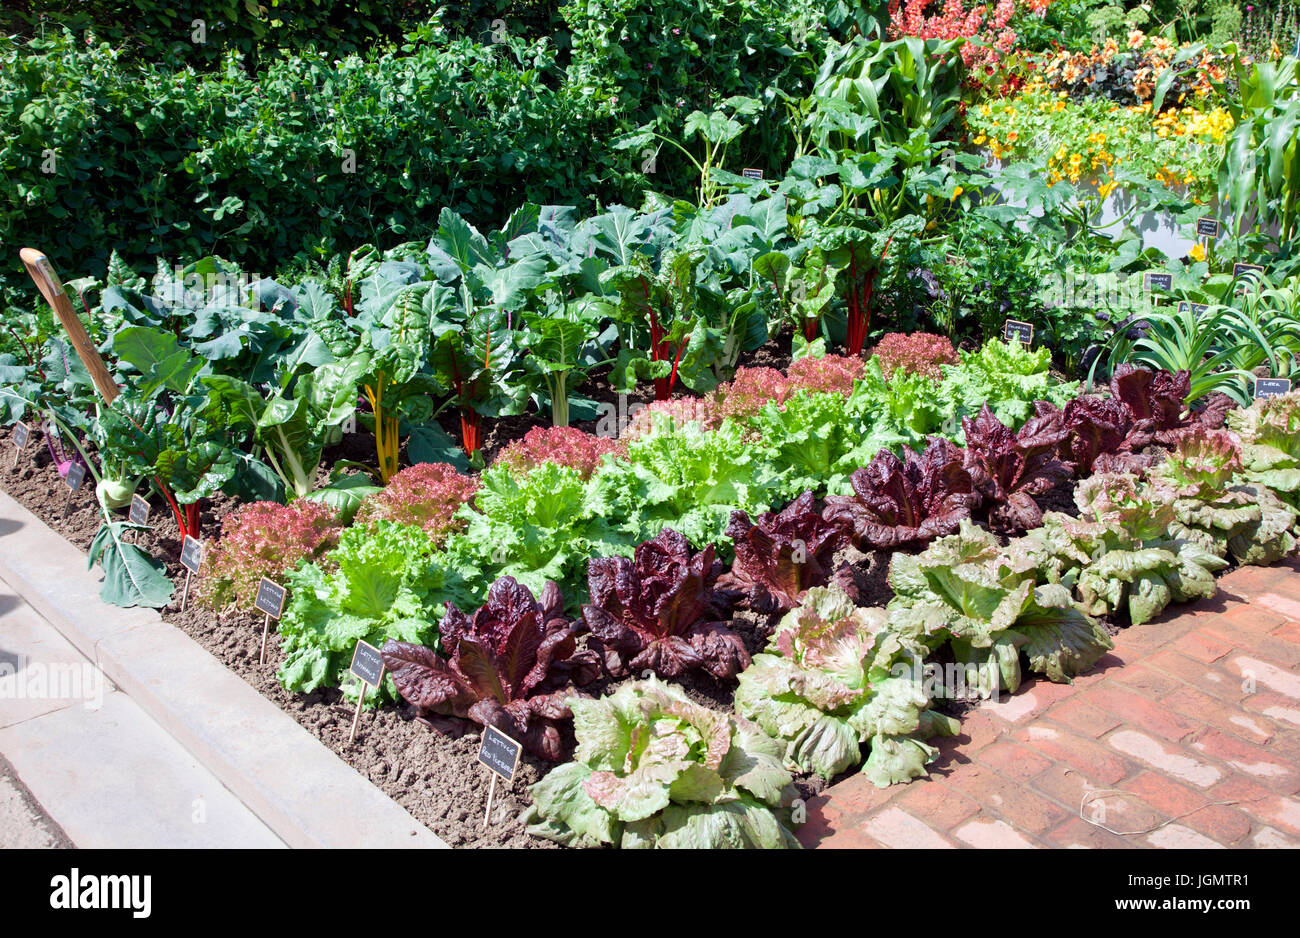 Chris Evans verduras en el jardín, un gusto por la BBC Radio 2 sentirse bien jardín diseñado por Jon Wheatley para RHS Chelsea Flower Show 2017 Foto de stock